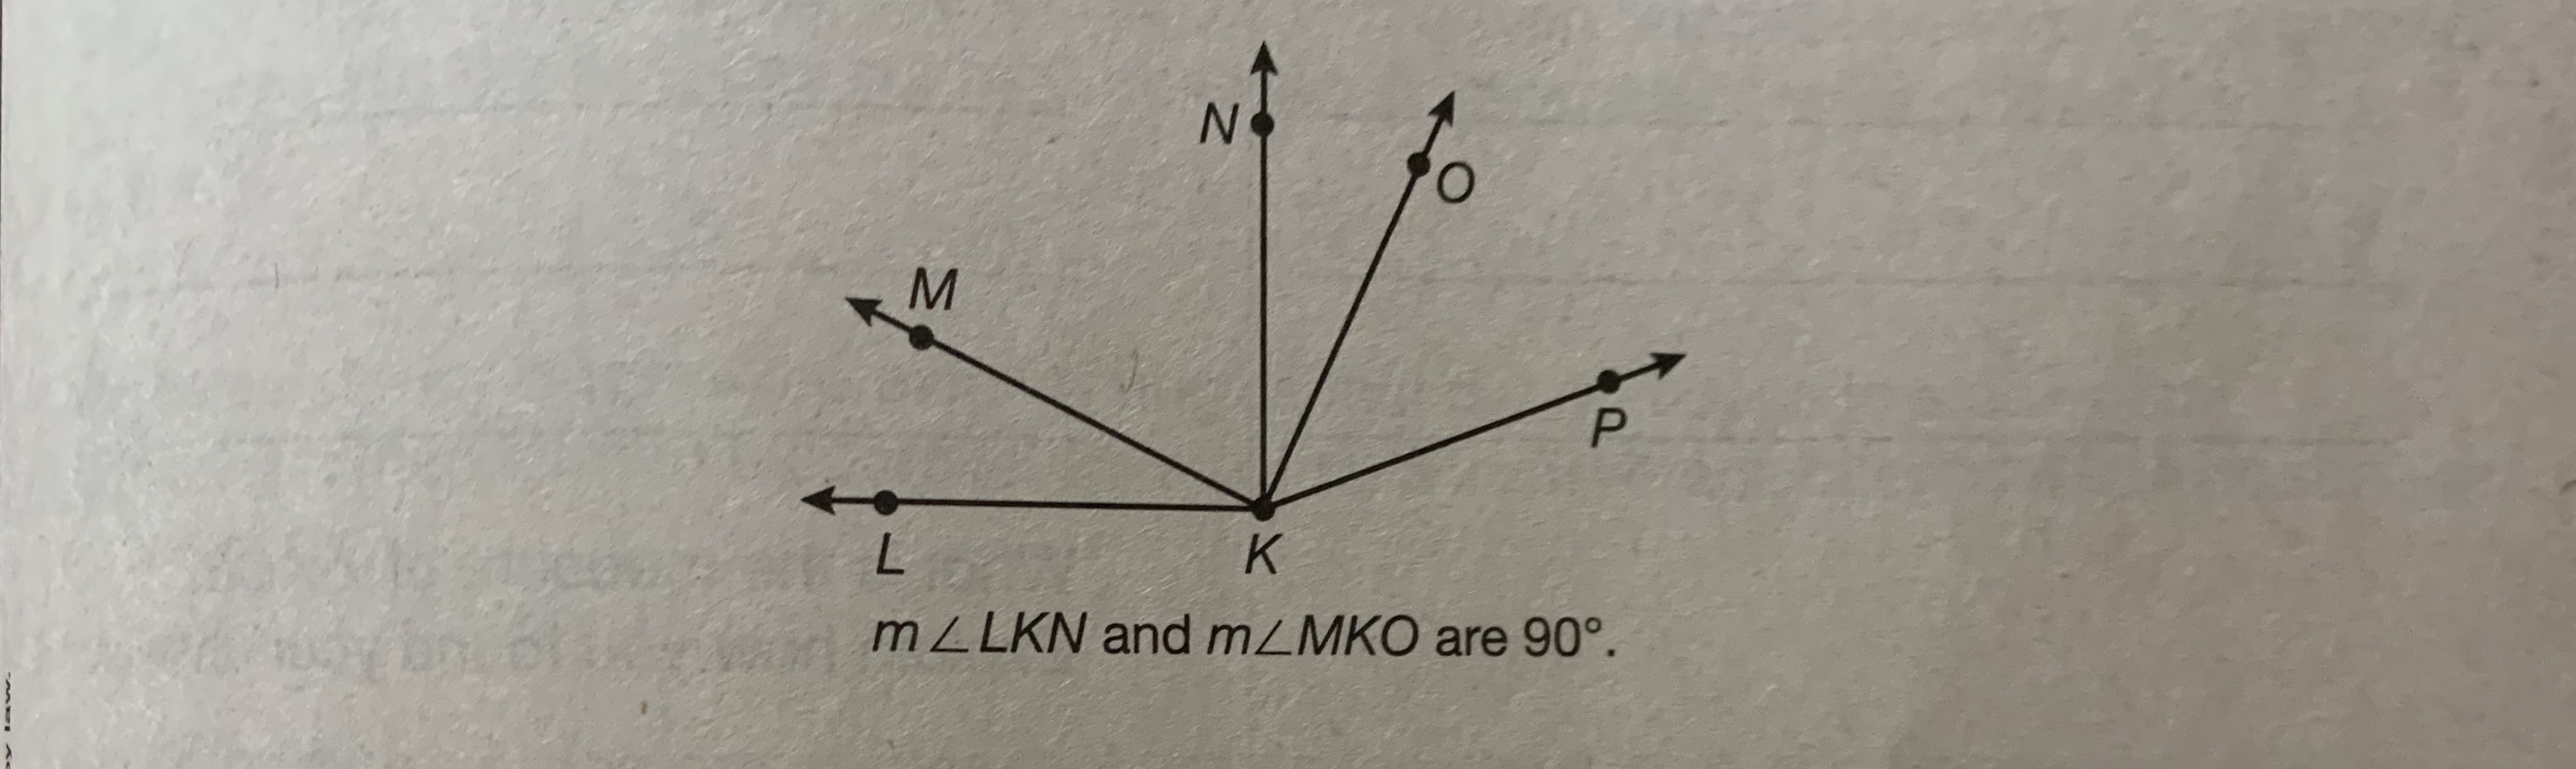 N.
K
MZLKN and mZMKO are 90°.
